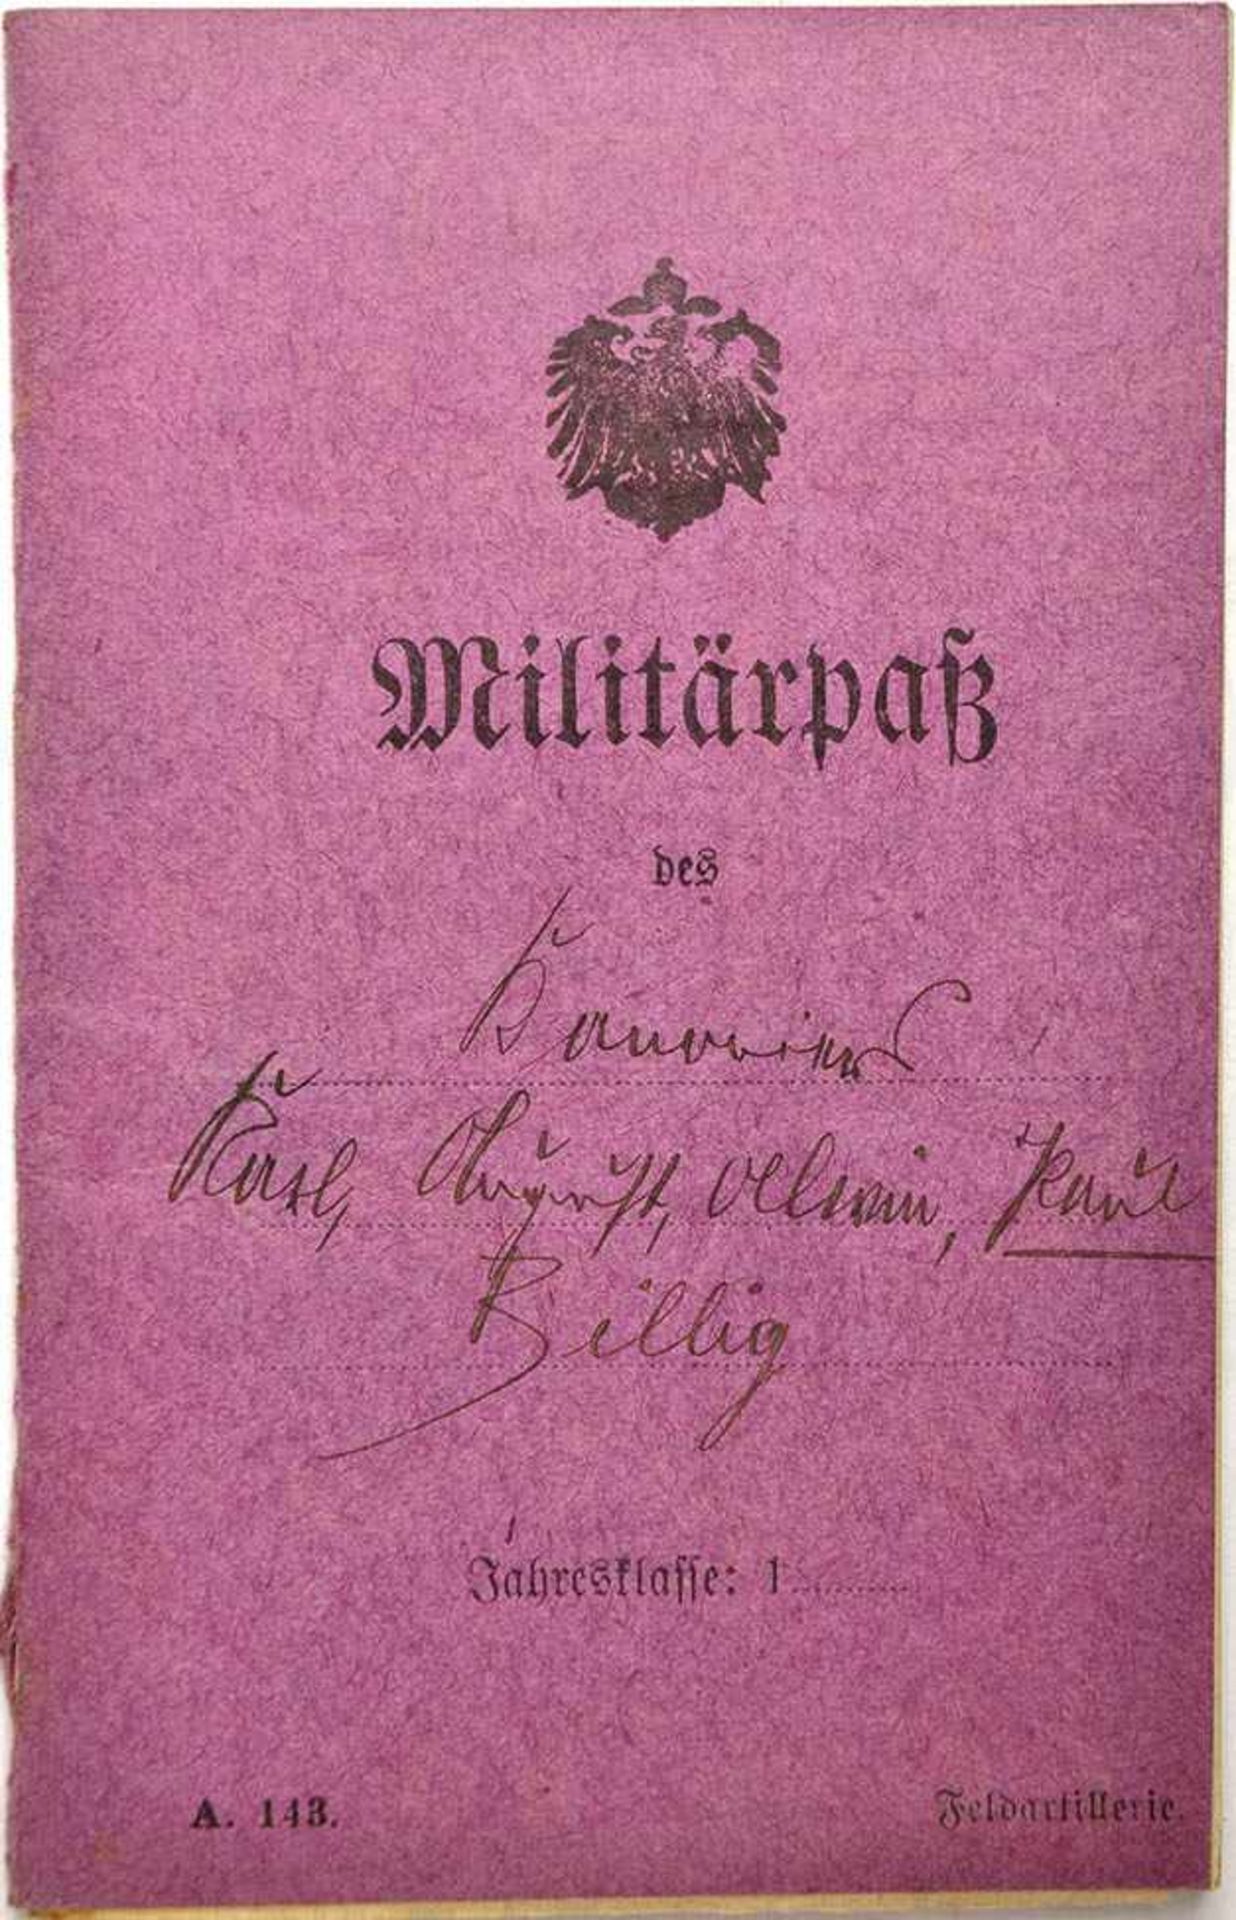 MILITÄRPAß e. Kanoniers, eingetreten August 1918, November 1918 entlassen, nur Personalia